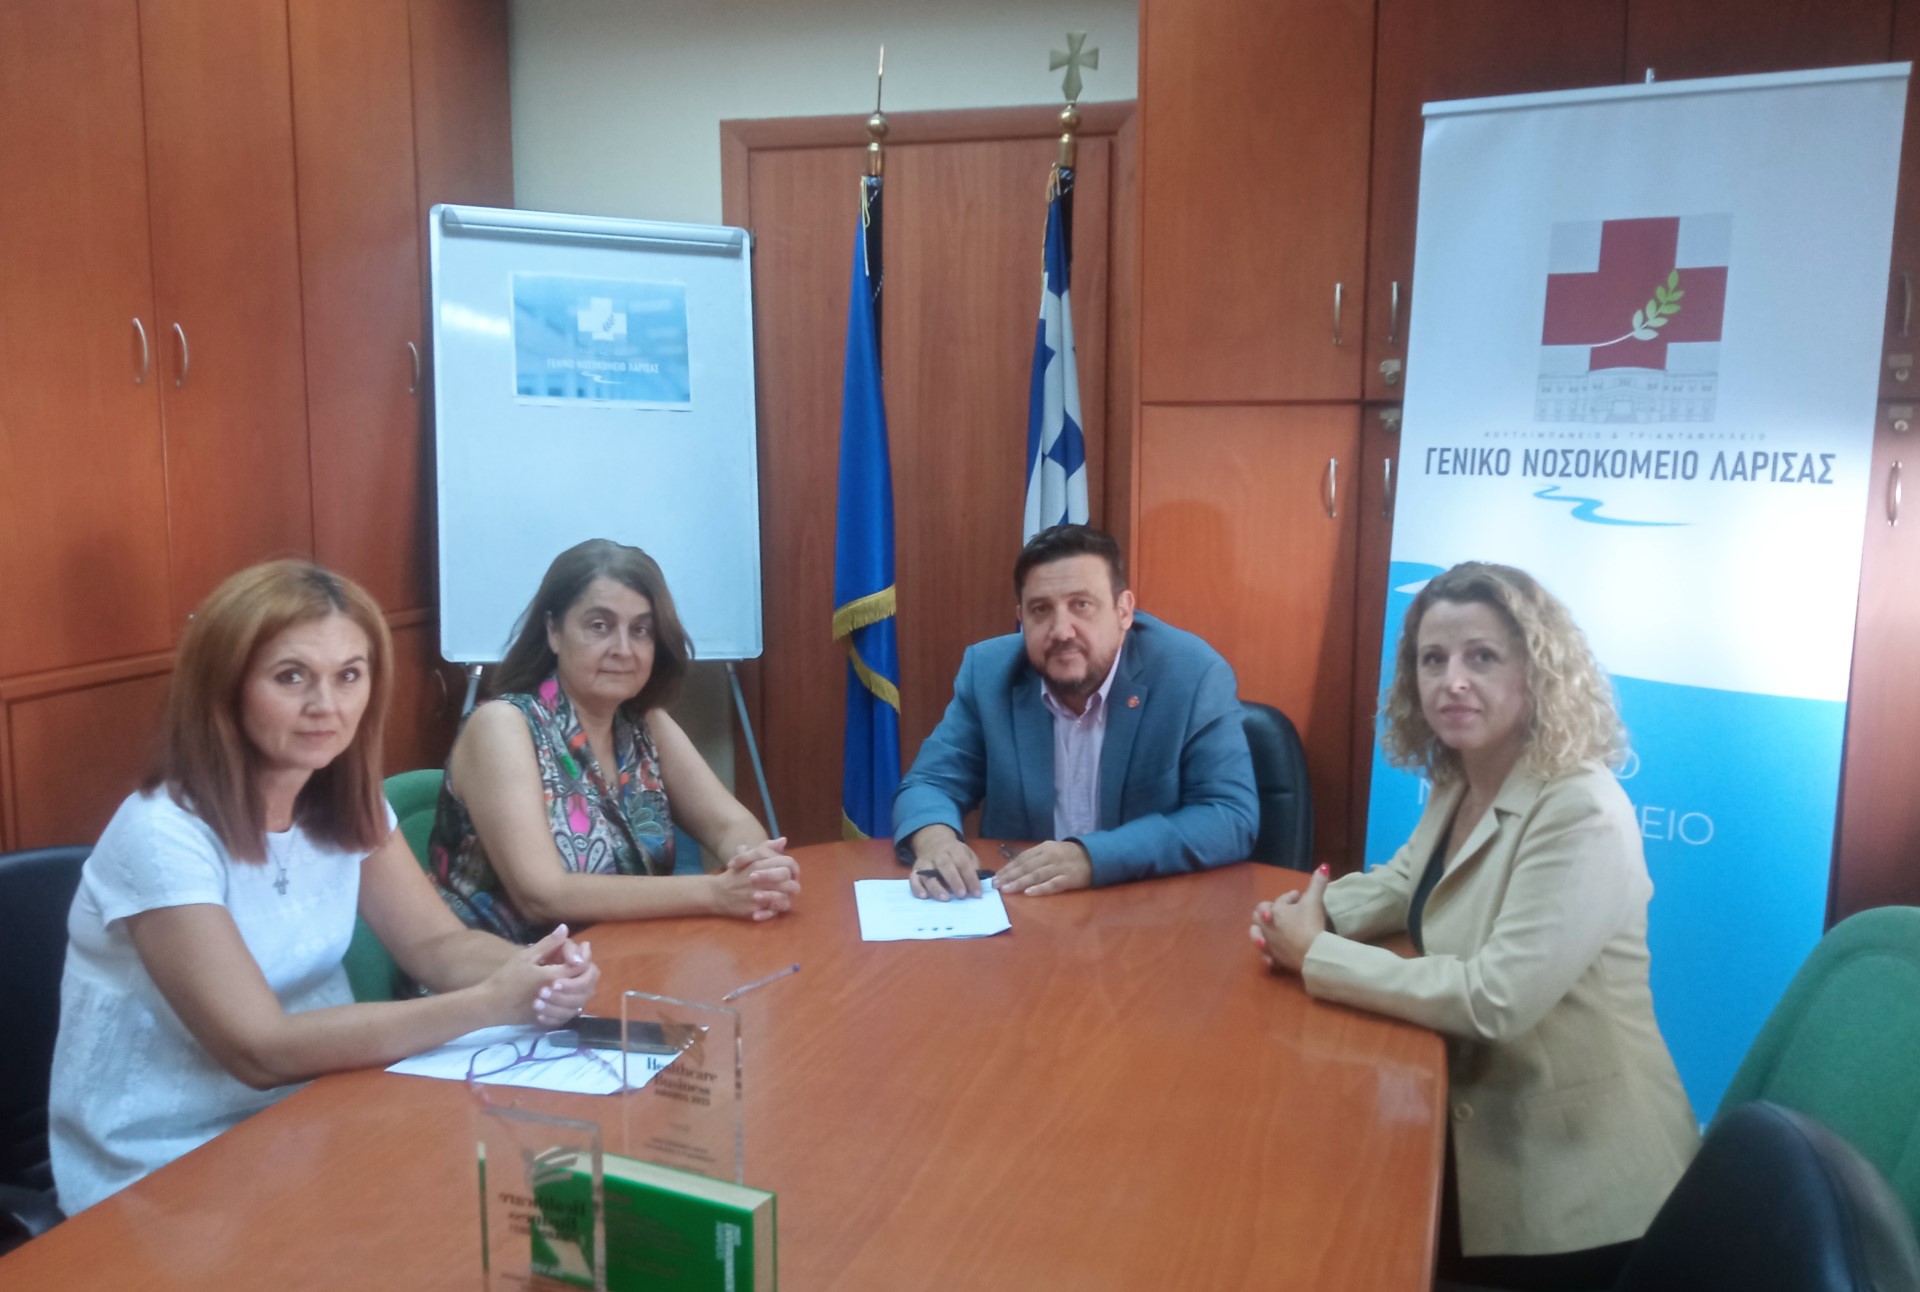 Λάρισα: Συνεργασία του Γενικού Νοσοκομείου με την Μονάδα Καινοτομίας του Πανεπιστημίου Θεσσαλίας